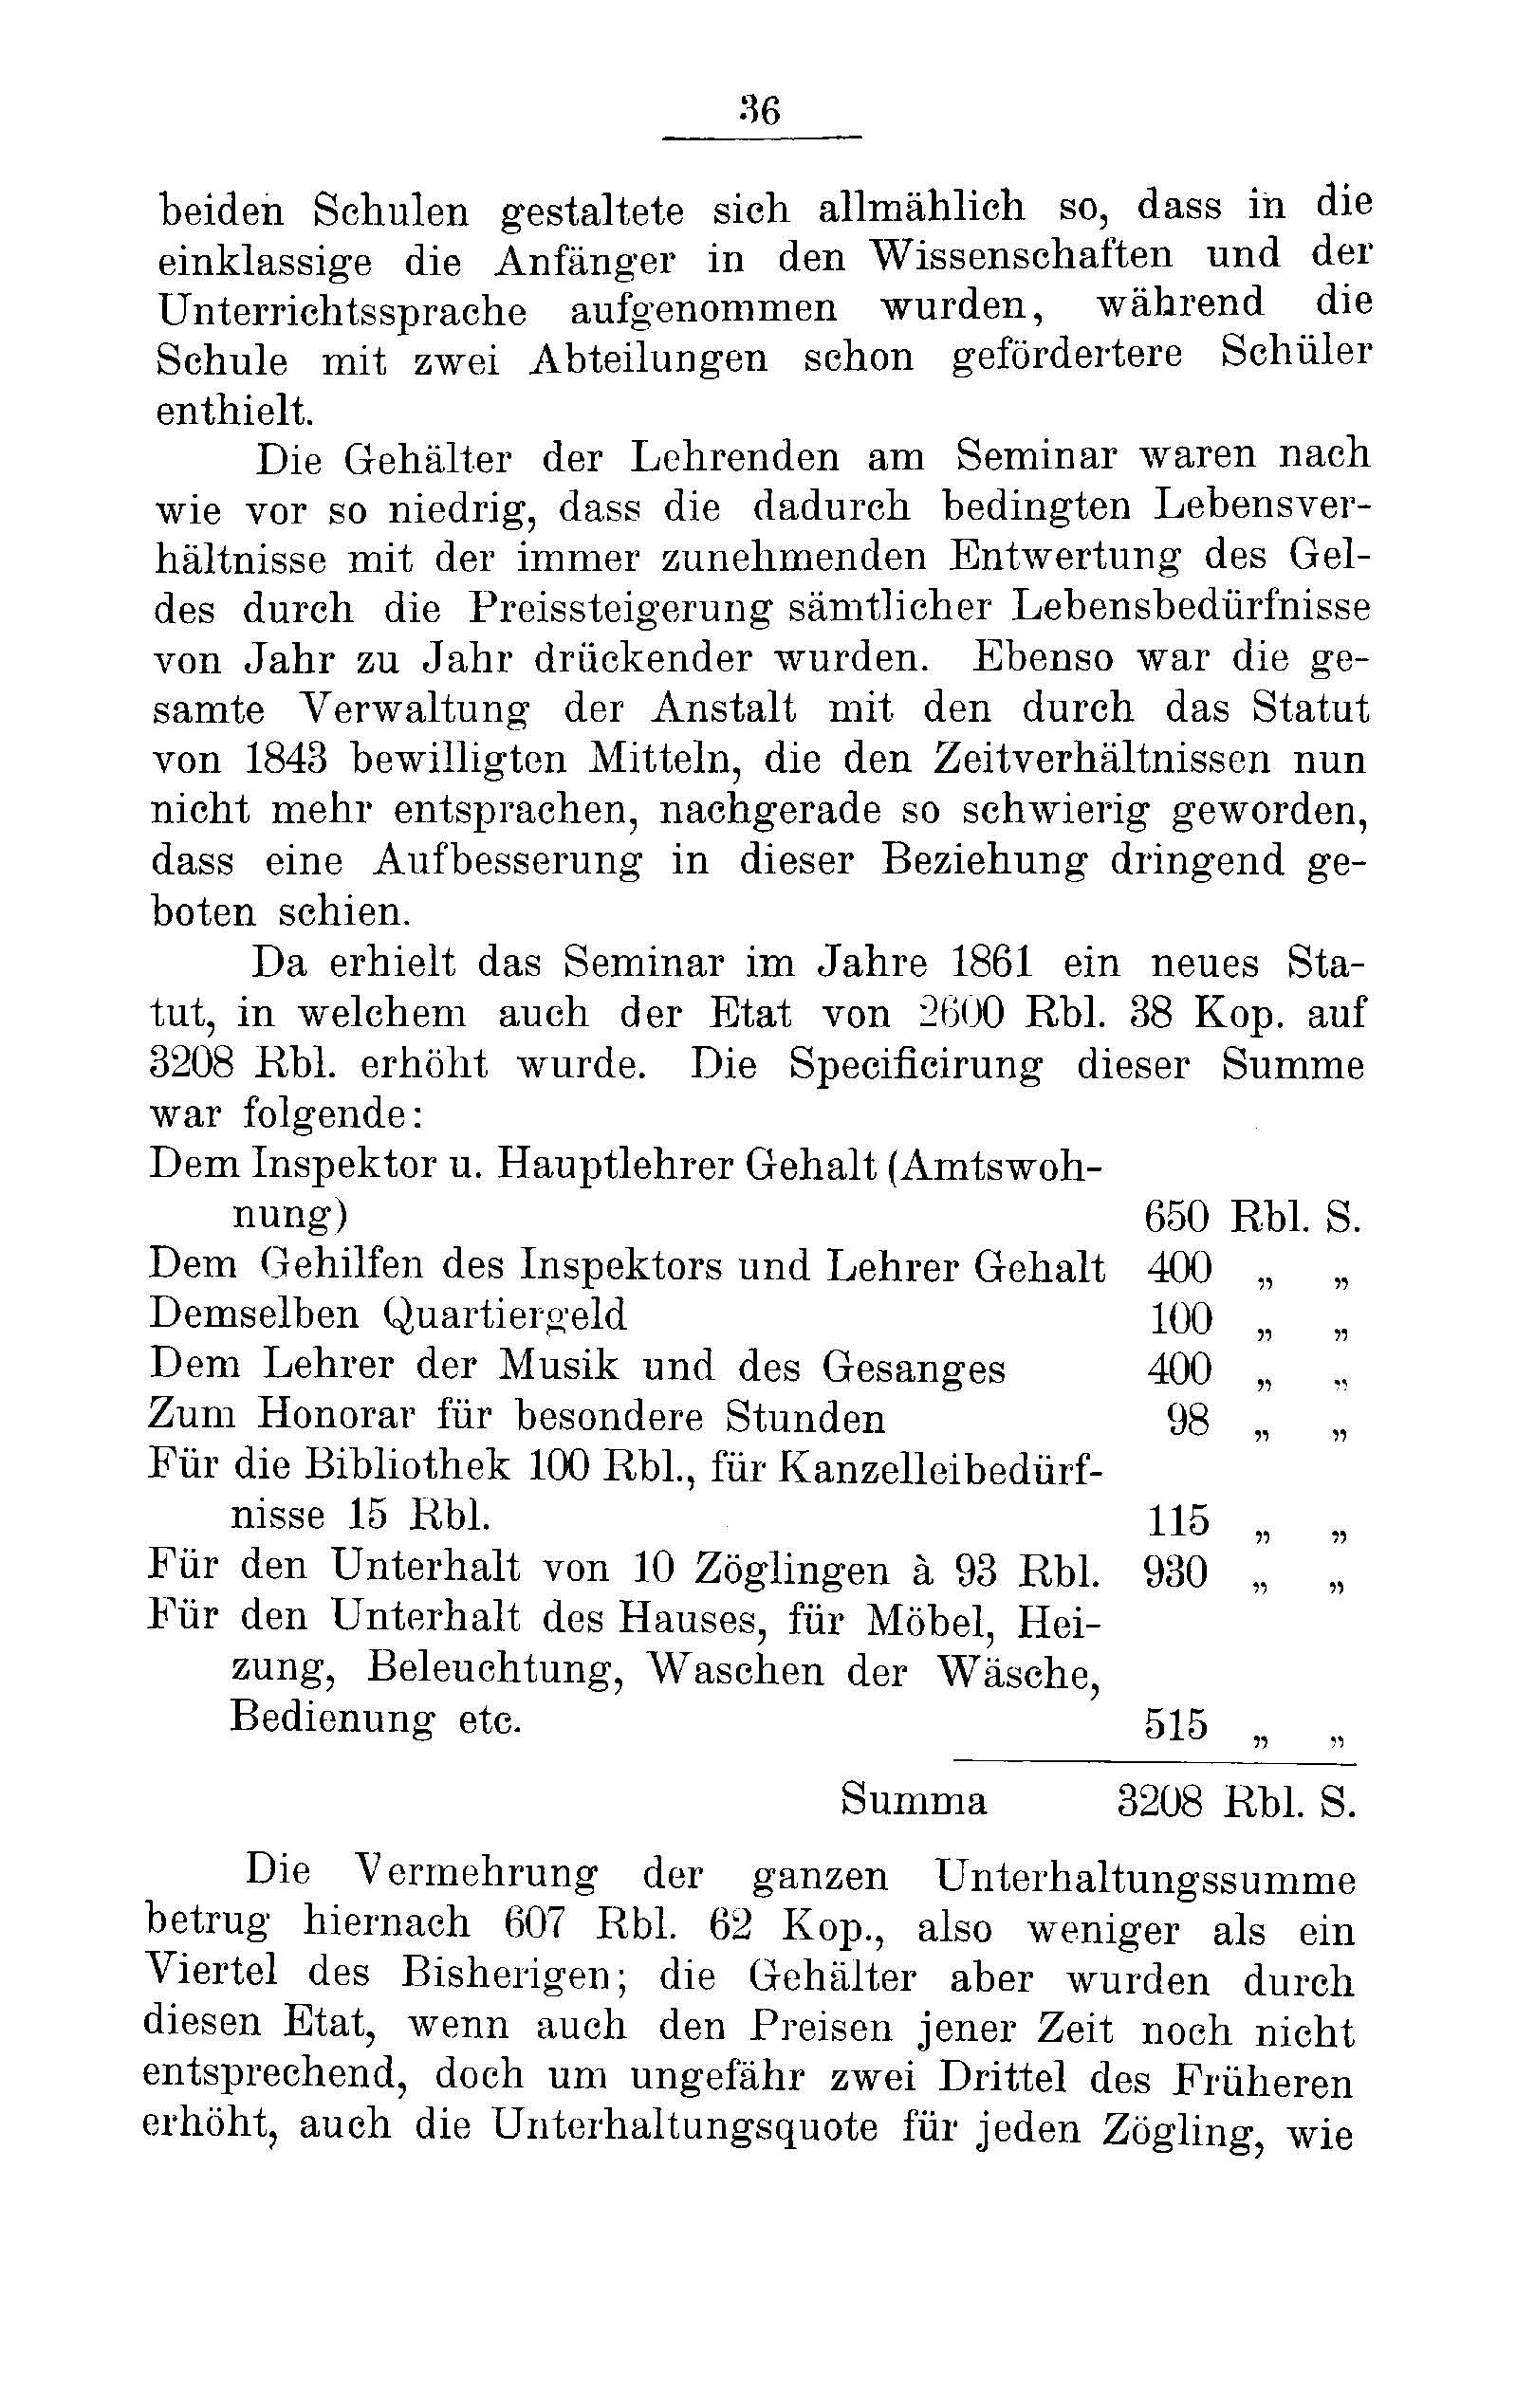 Das Erste Dorpatsche Lehrer-Seminar (1890) | 38. Main body of text